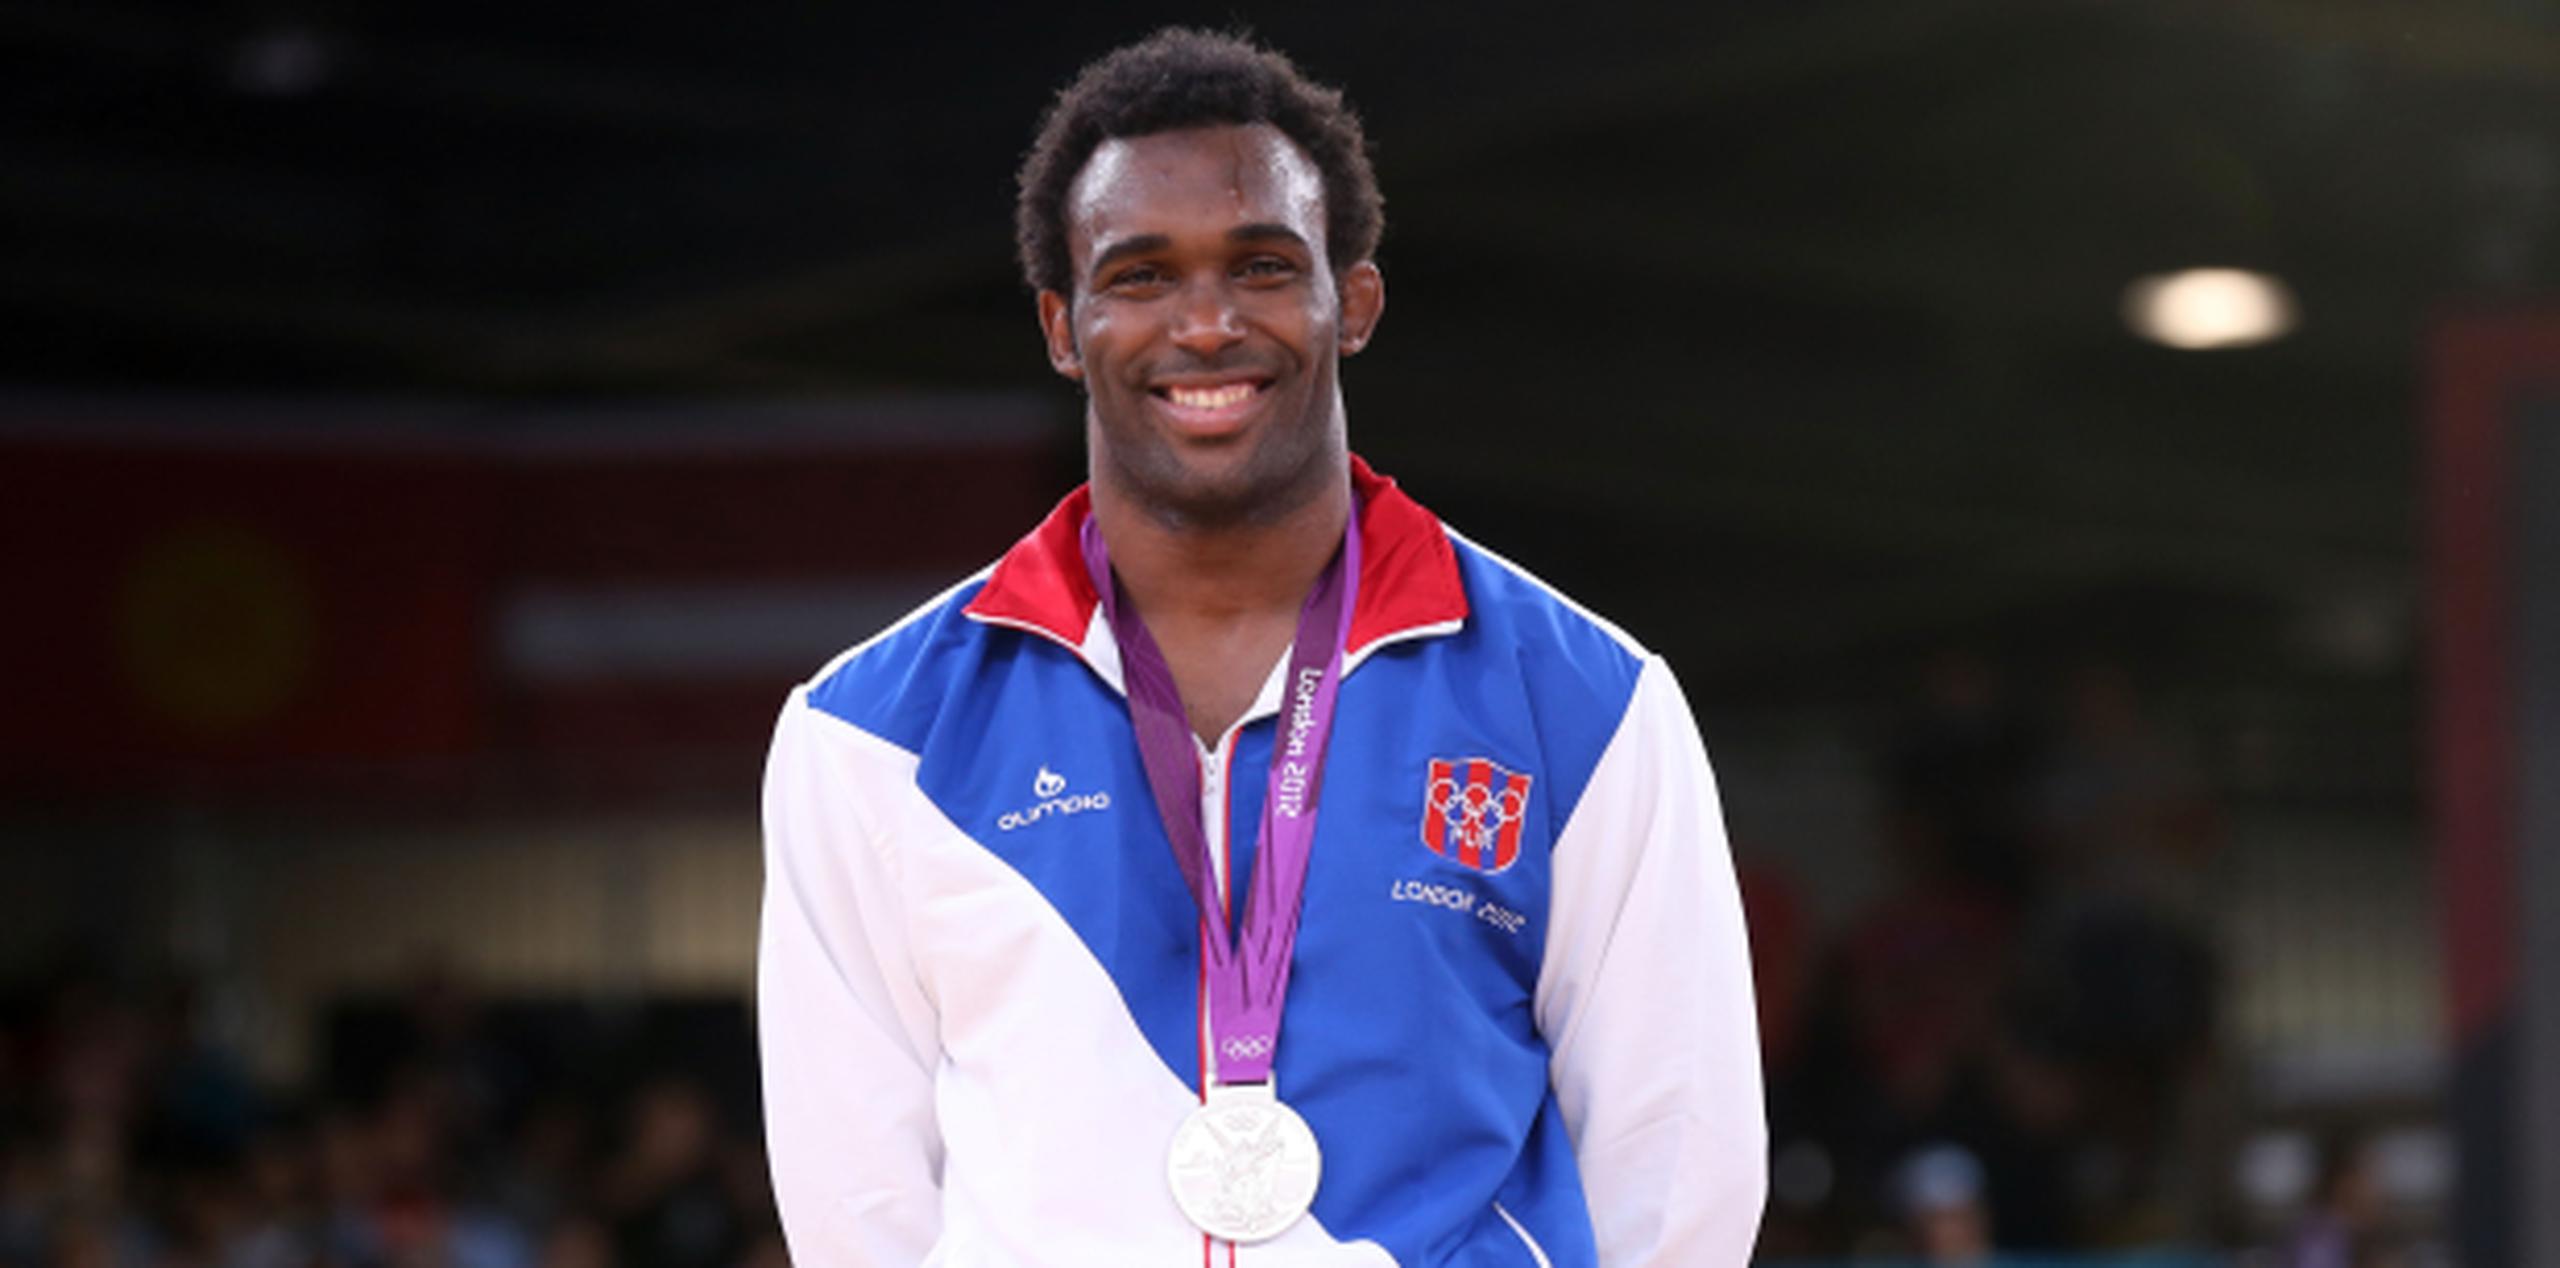 Jaime Espinal consiguió la medalla de plata en las Olimpiadas de Londres 2012. (Archivo)